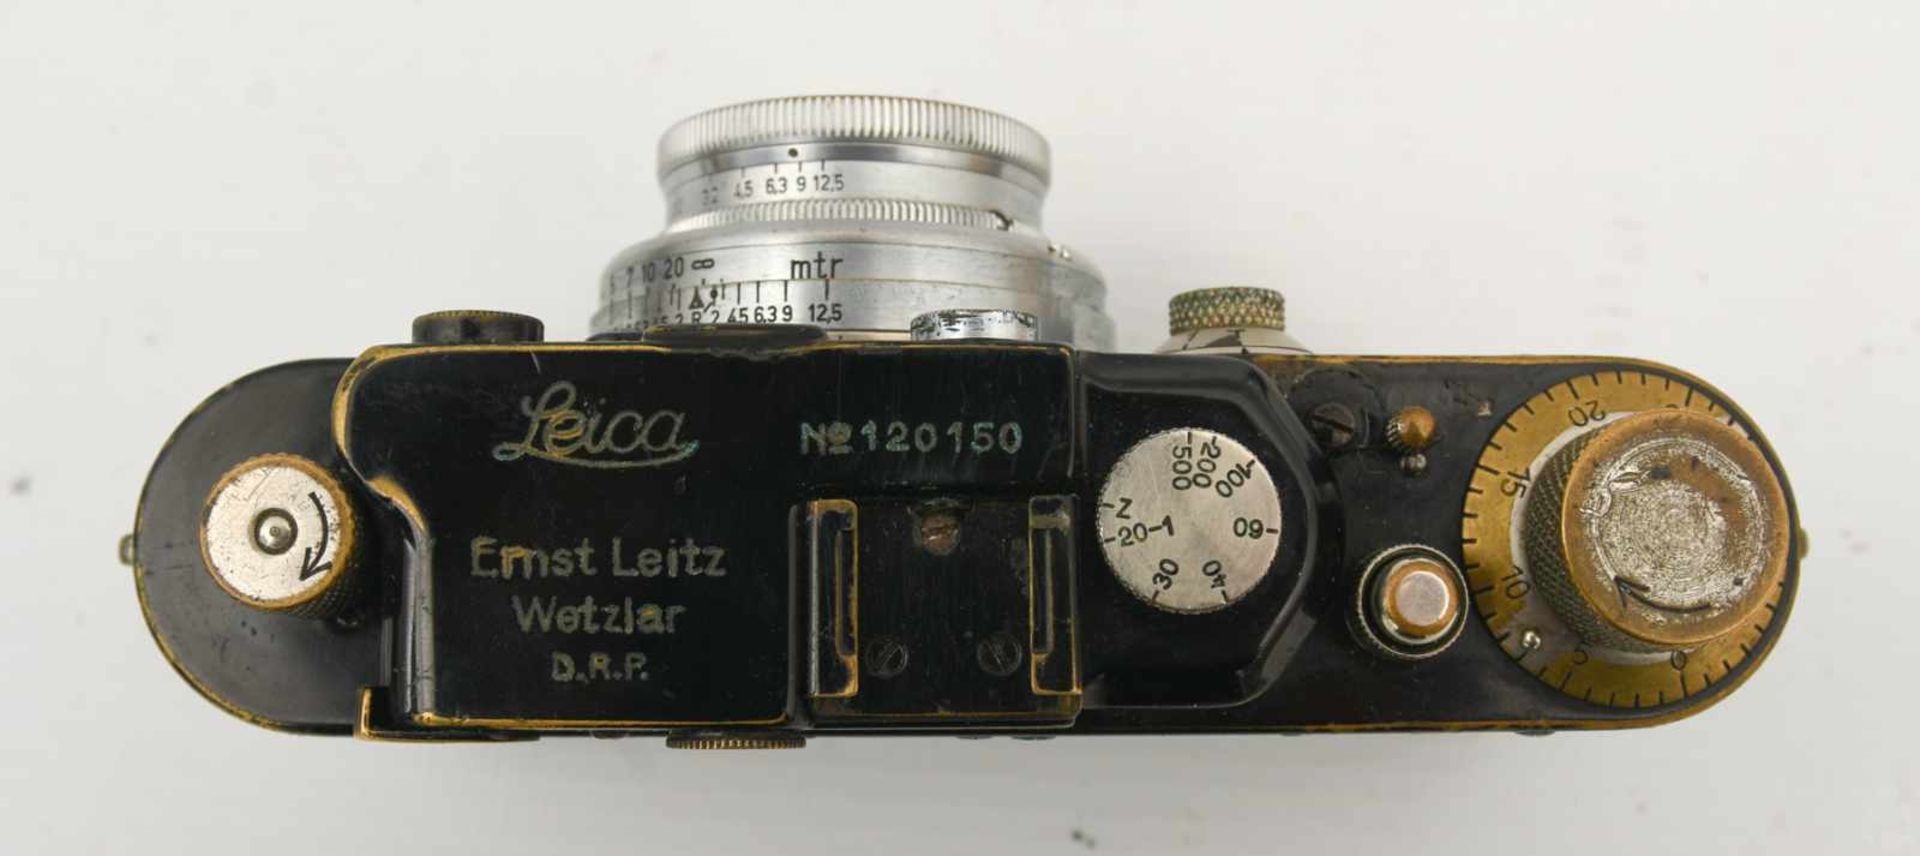 LEICA KAMERA, Deutsches Reich um 1935 Kamera der Firma Leica "Ernst Leitz Wetzlar D.R,.P." Alters- - Bild 5 aus 9